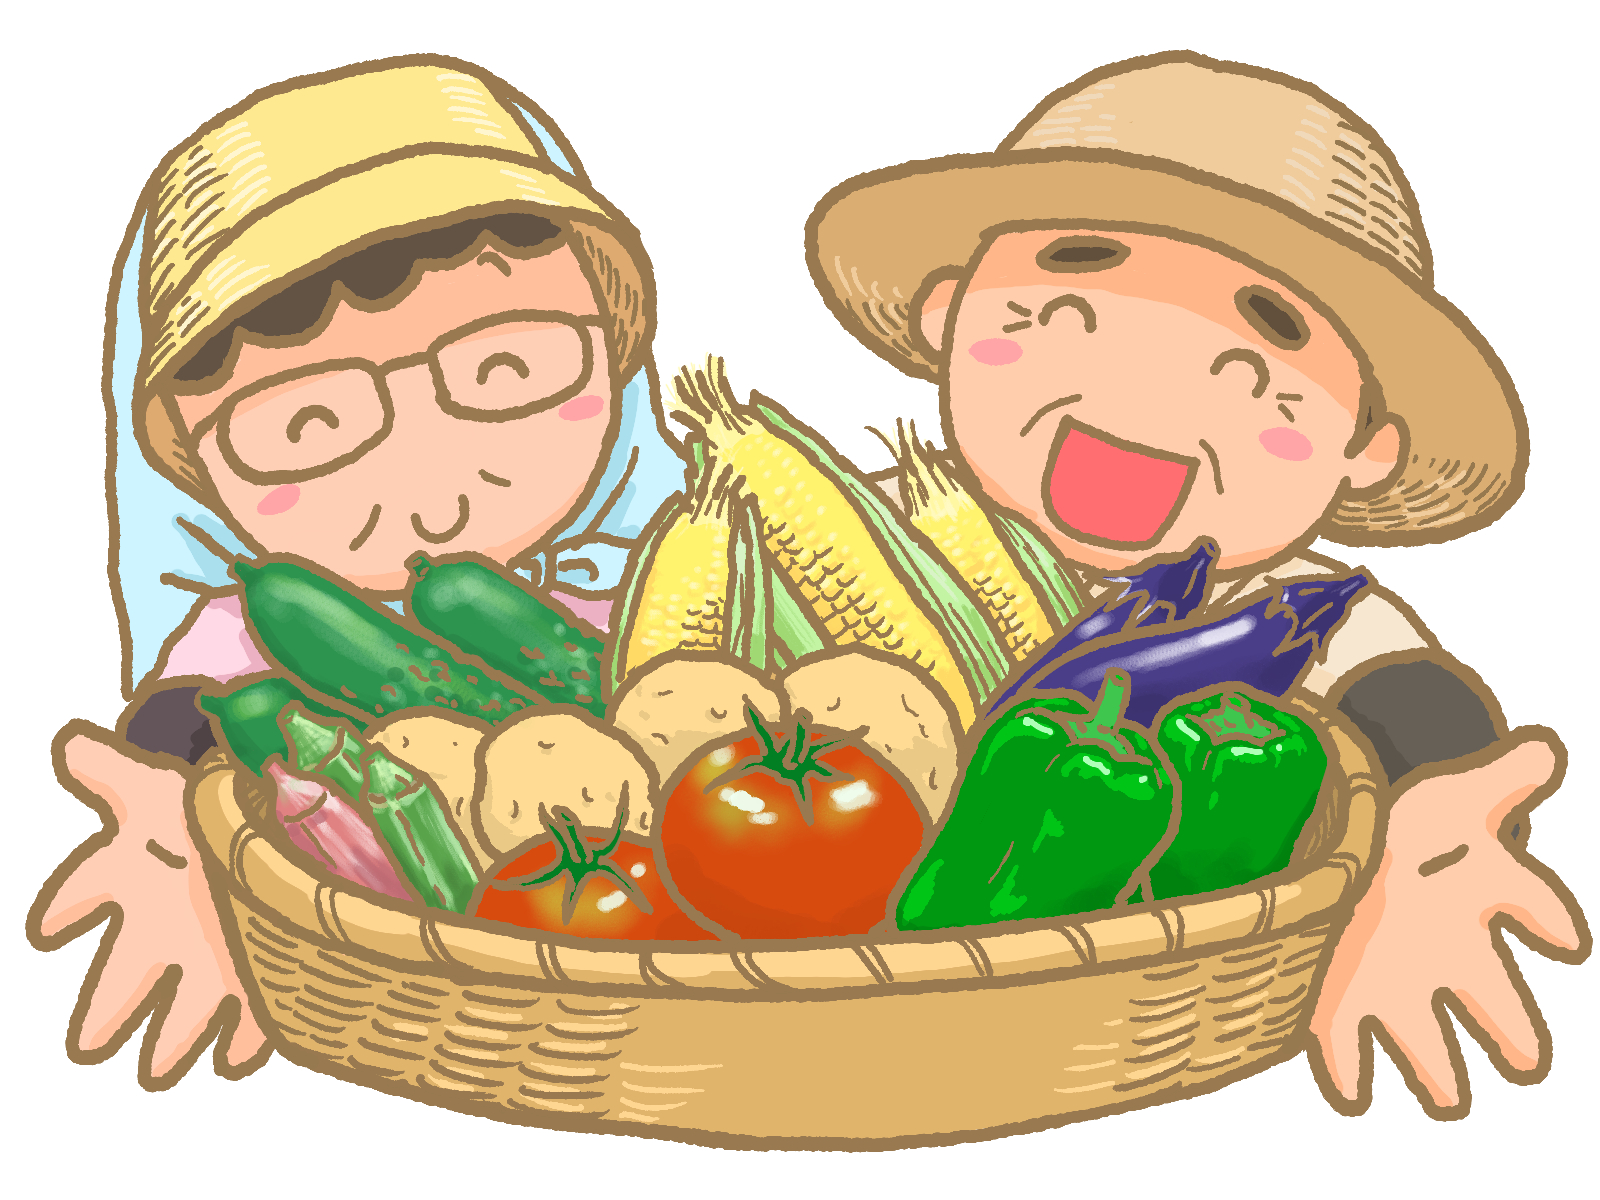 9月14日 (土) 、15日 (日)、「第3回青空マルシェ in エイスクエア」開催！地元野菜や特産品が出揃い！ステージイベントも♪